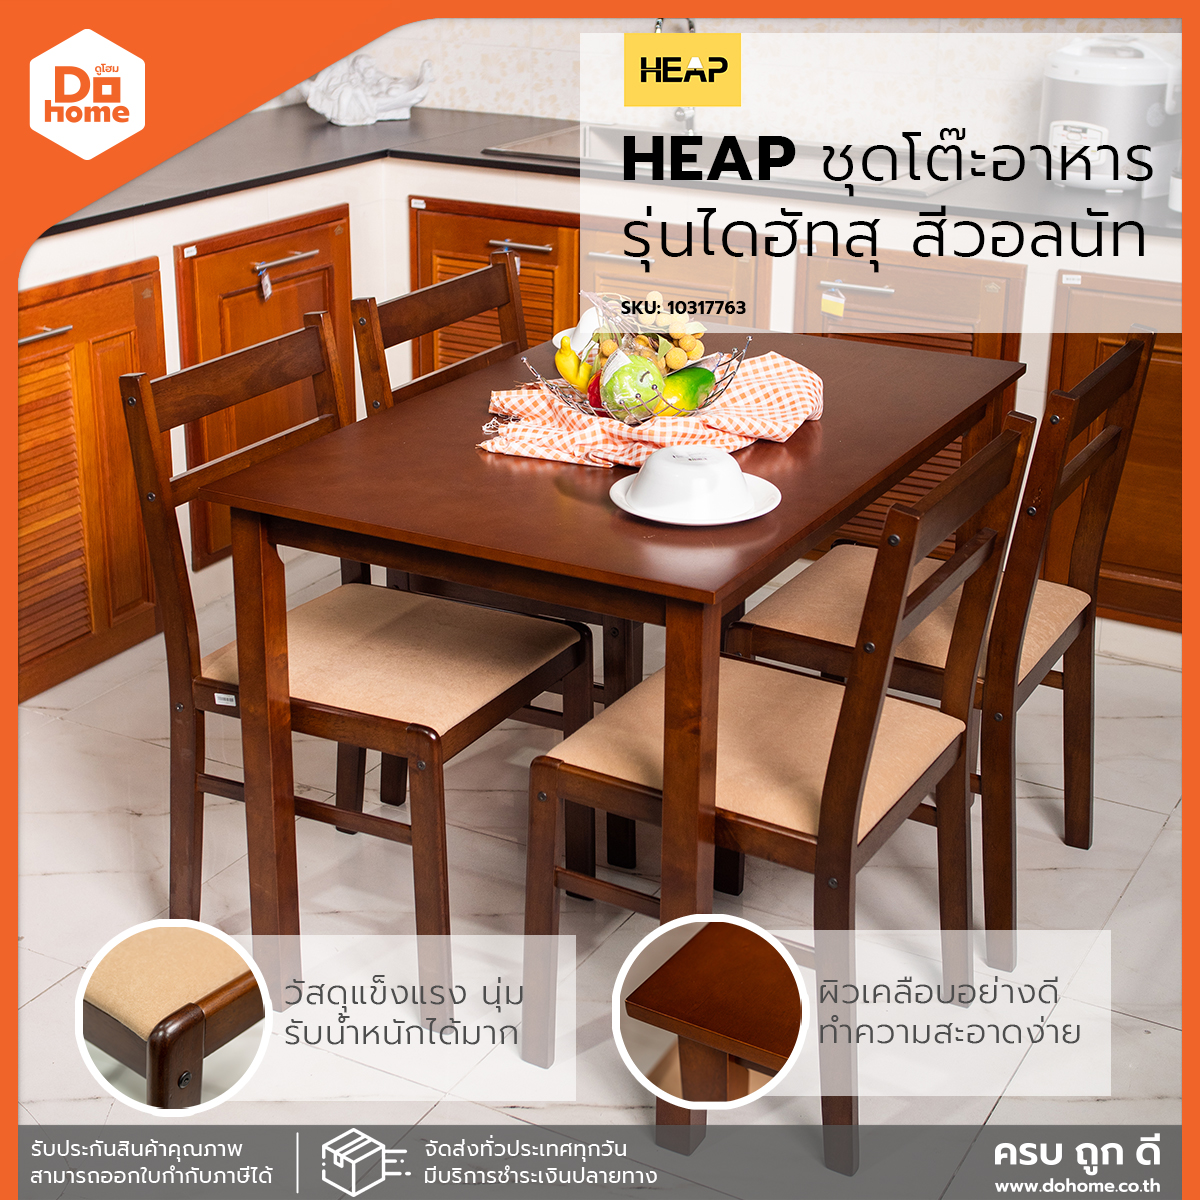 HEAP ชุดโต๊ะอาหารไม้ 4 ที่นั่ง รุ่นไดฮัทสุ สีวอลนัท (ไม่รวมประกอบ) |ZWF|